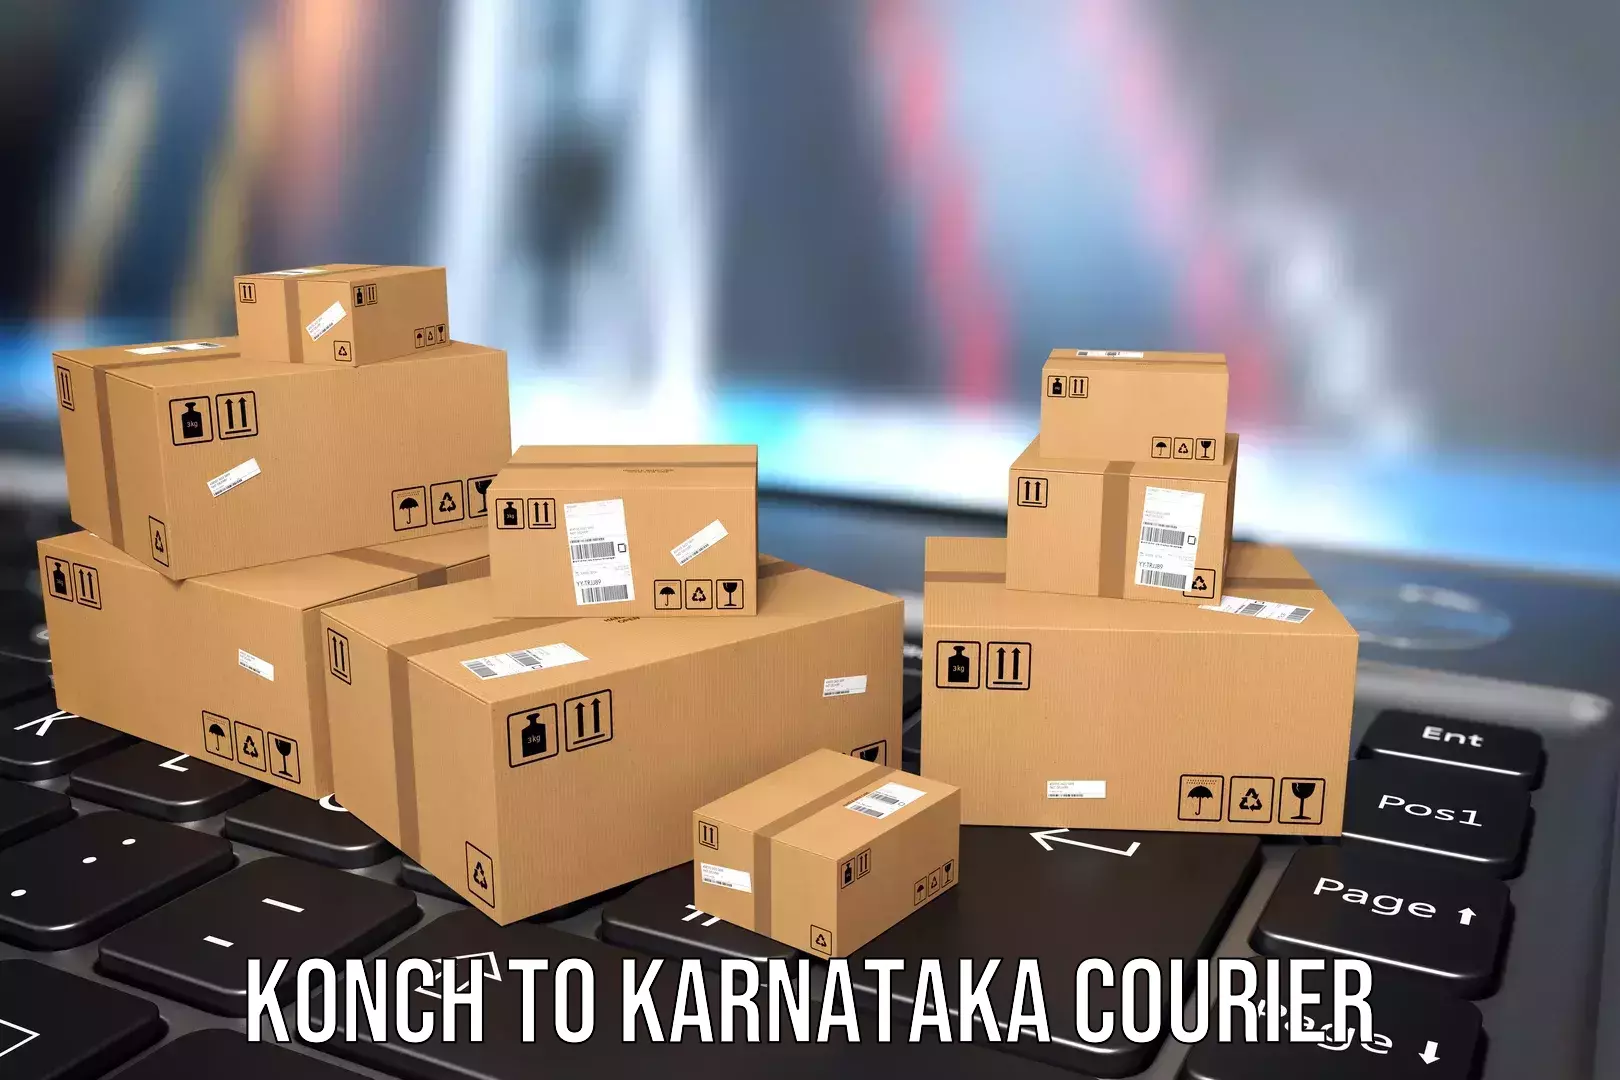 Versatile luggage courier Konch to Bangarapet